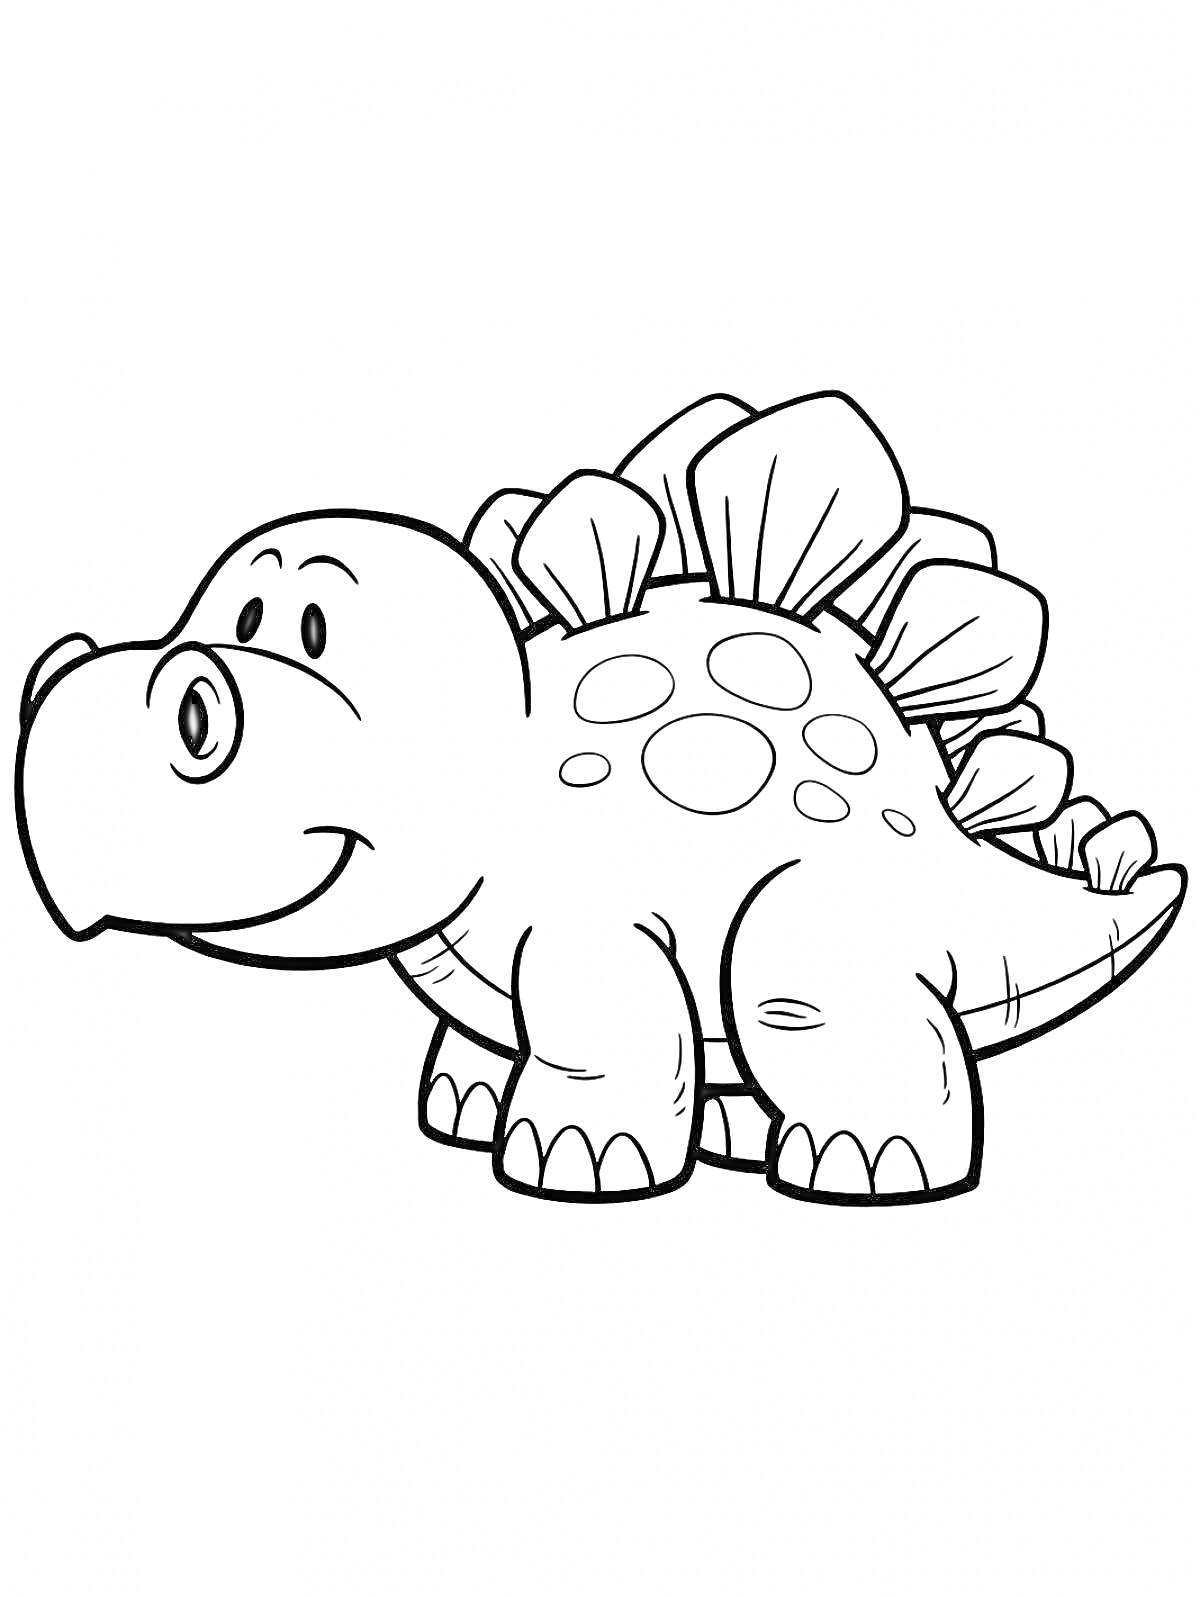 Раскраска Динозавр с пластинами на спине и пятнами, улыбающийся